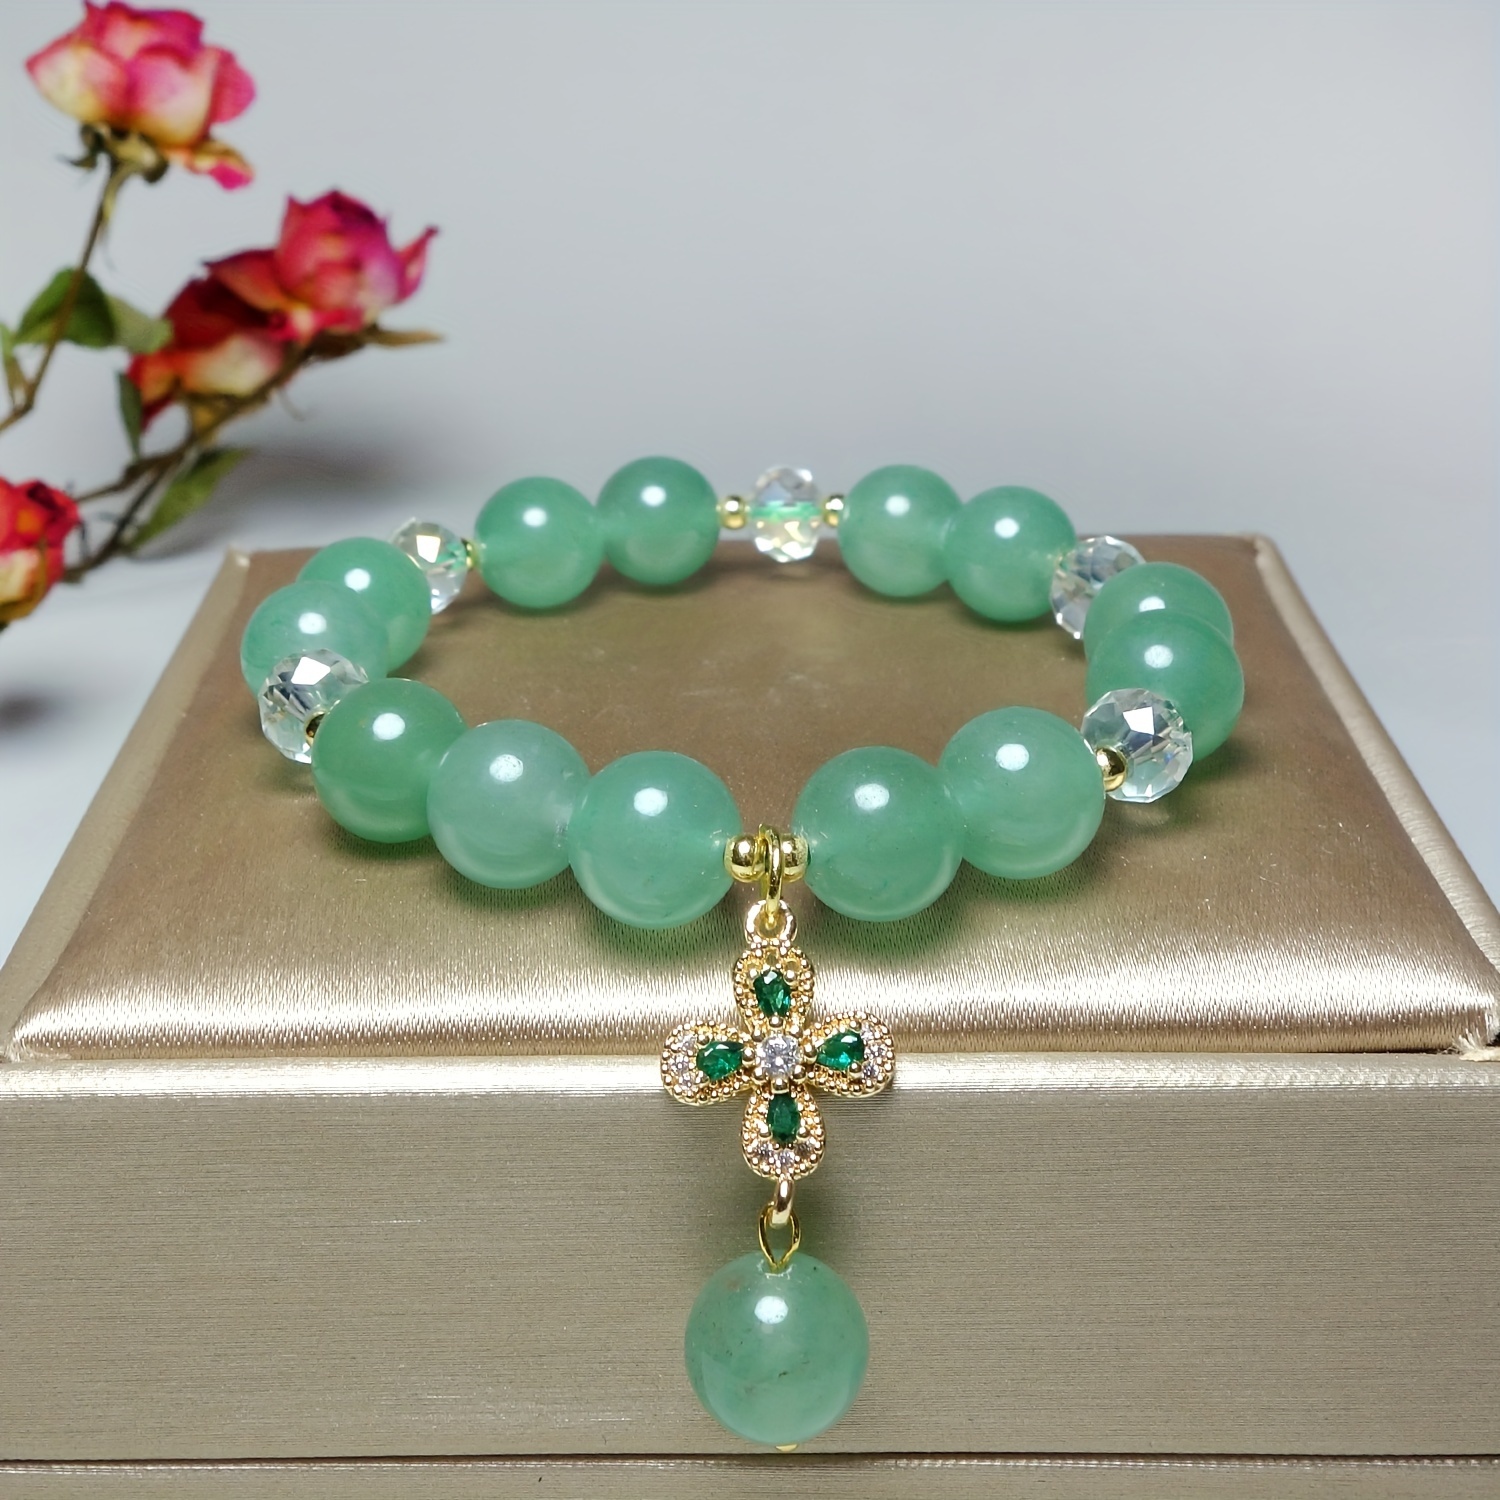 

Natural Jade Bracelet With 4 Leaf Clover Pendant Bracelet For Men And Women Best Gift